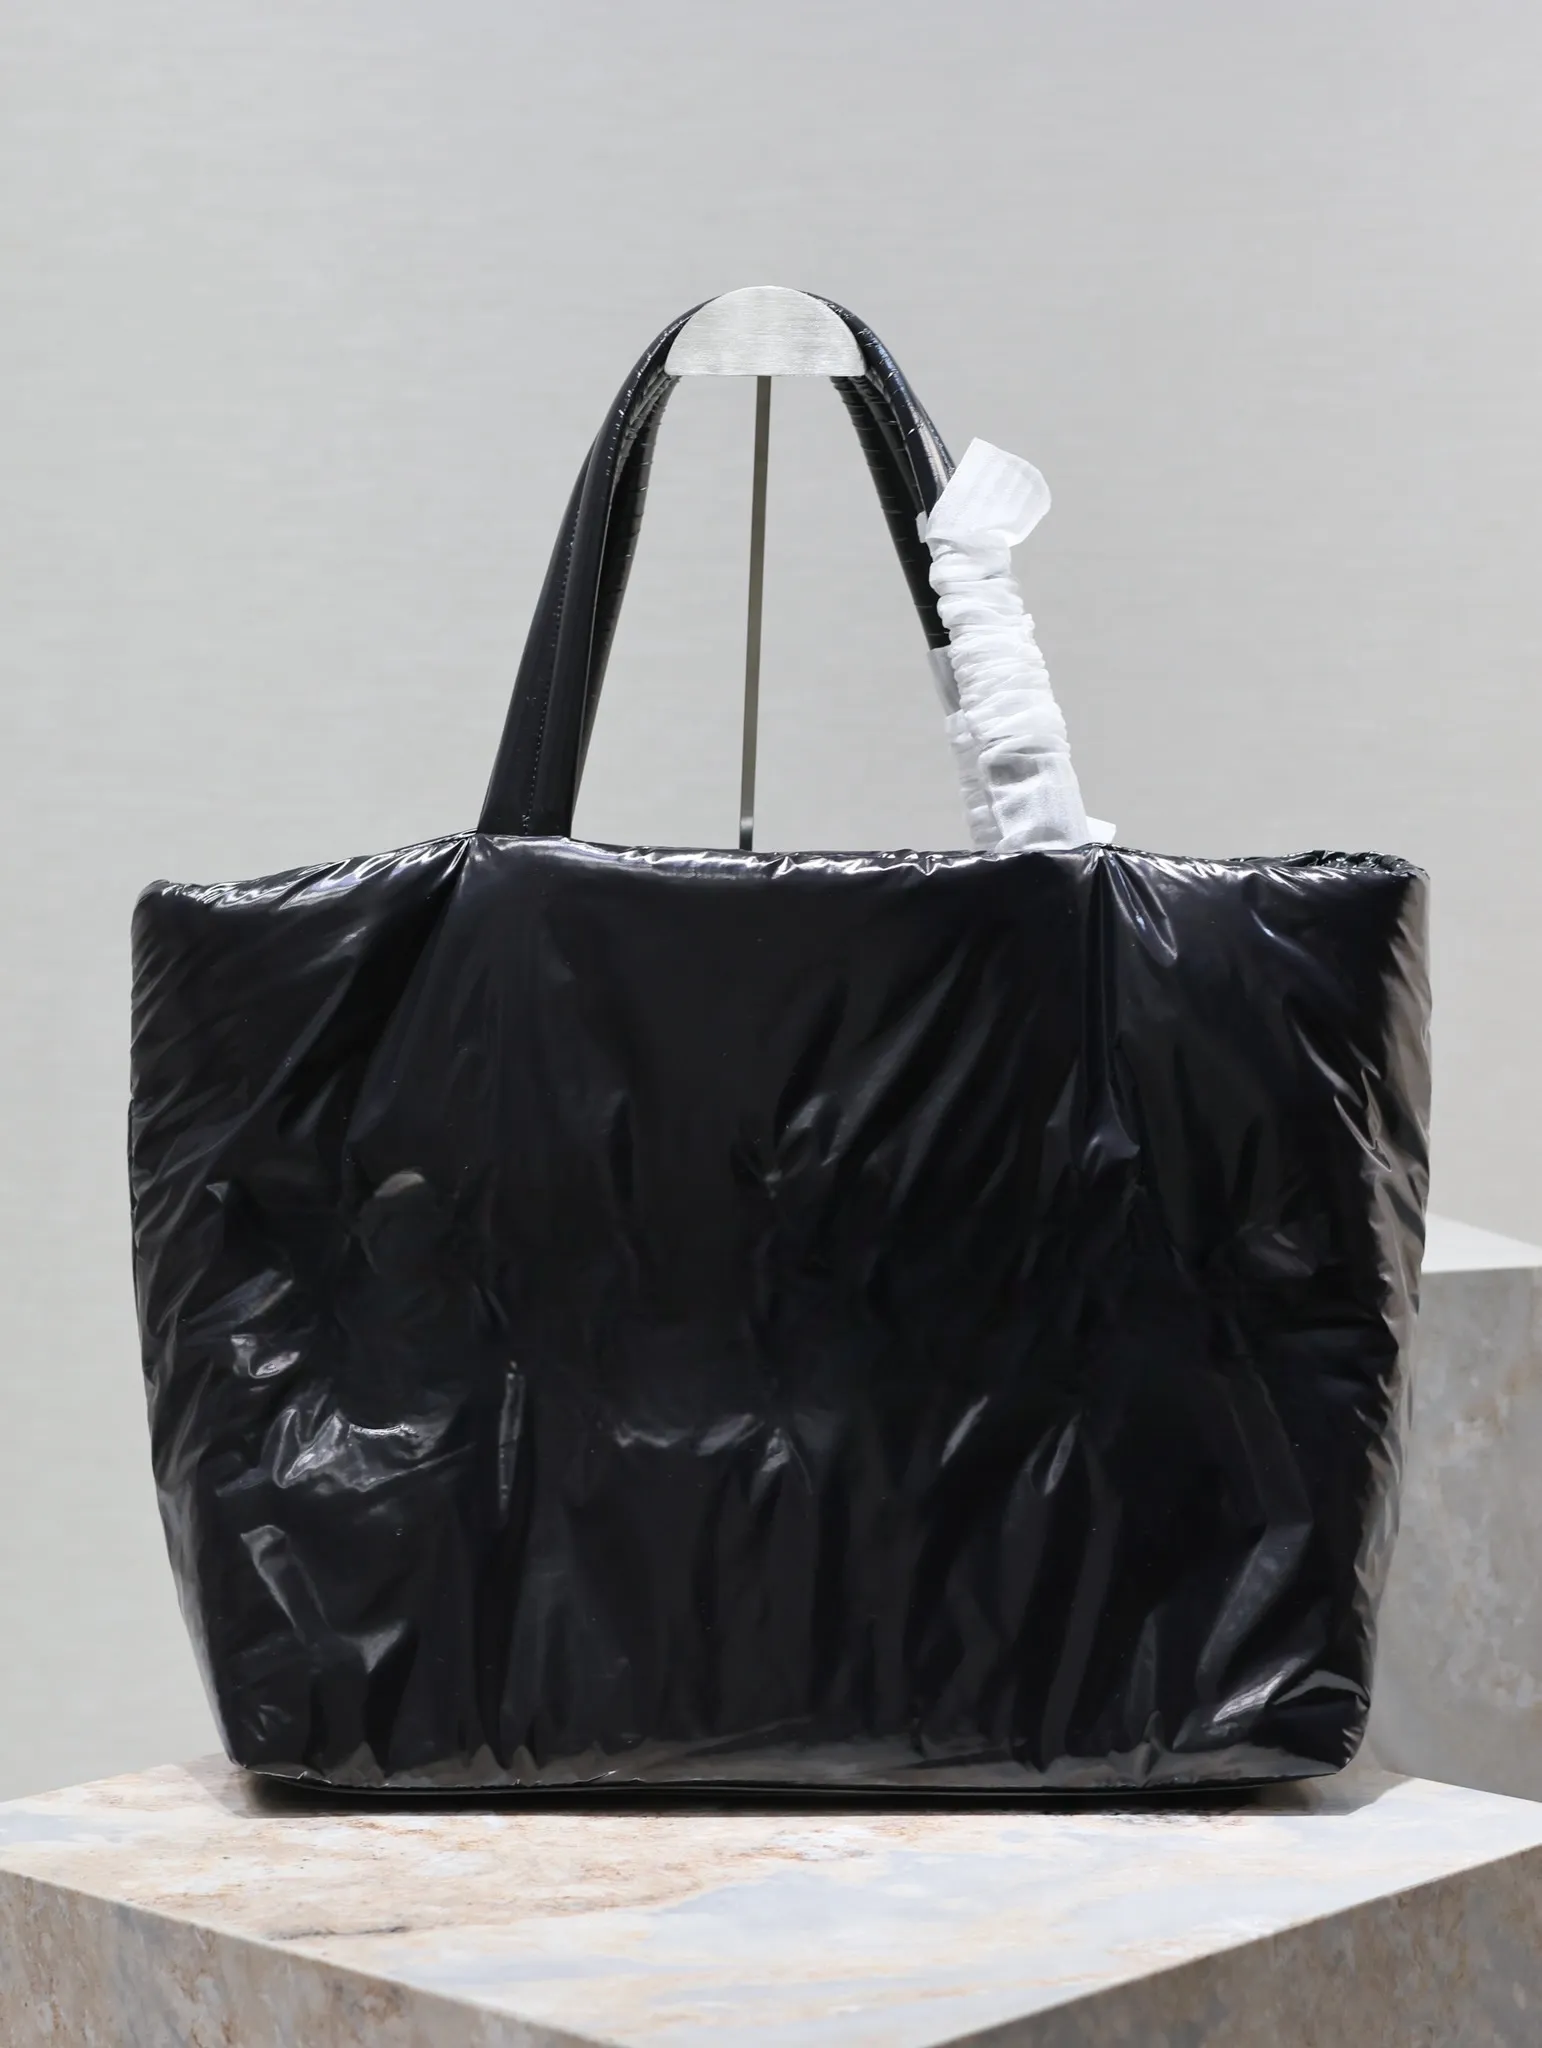 Czarna jedwabna torba, chłodna i stylowa